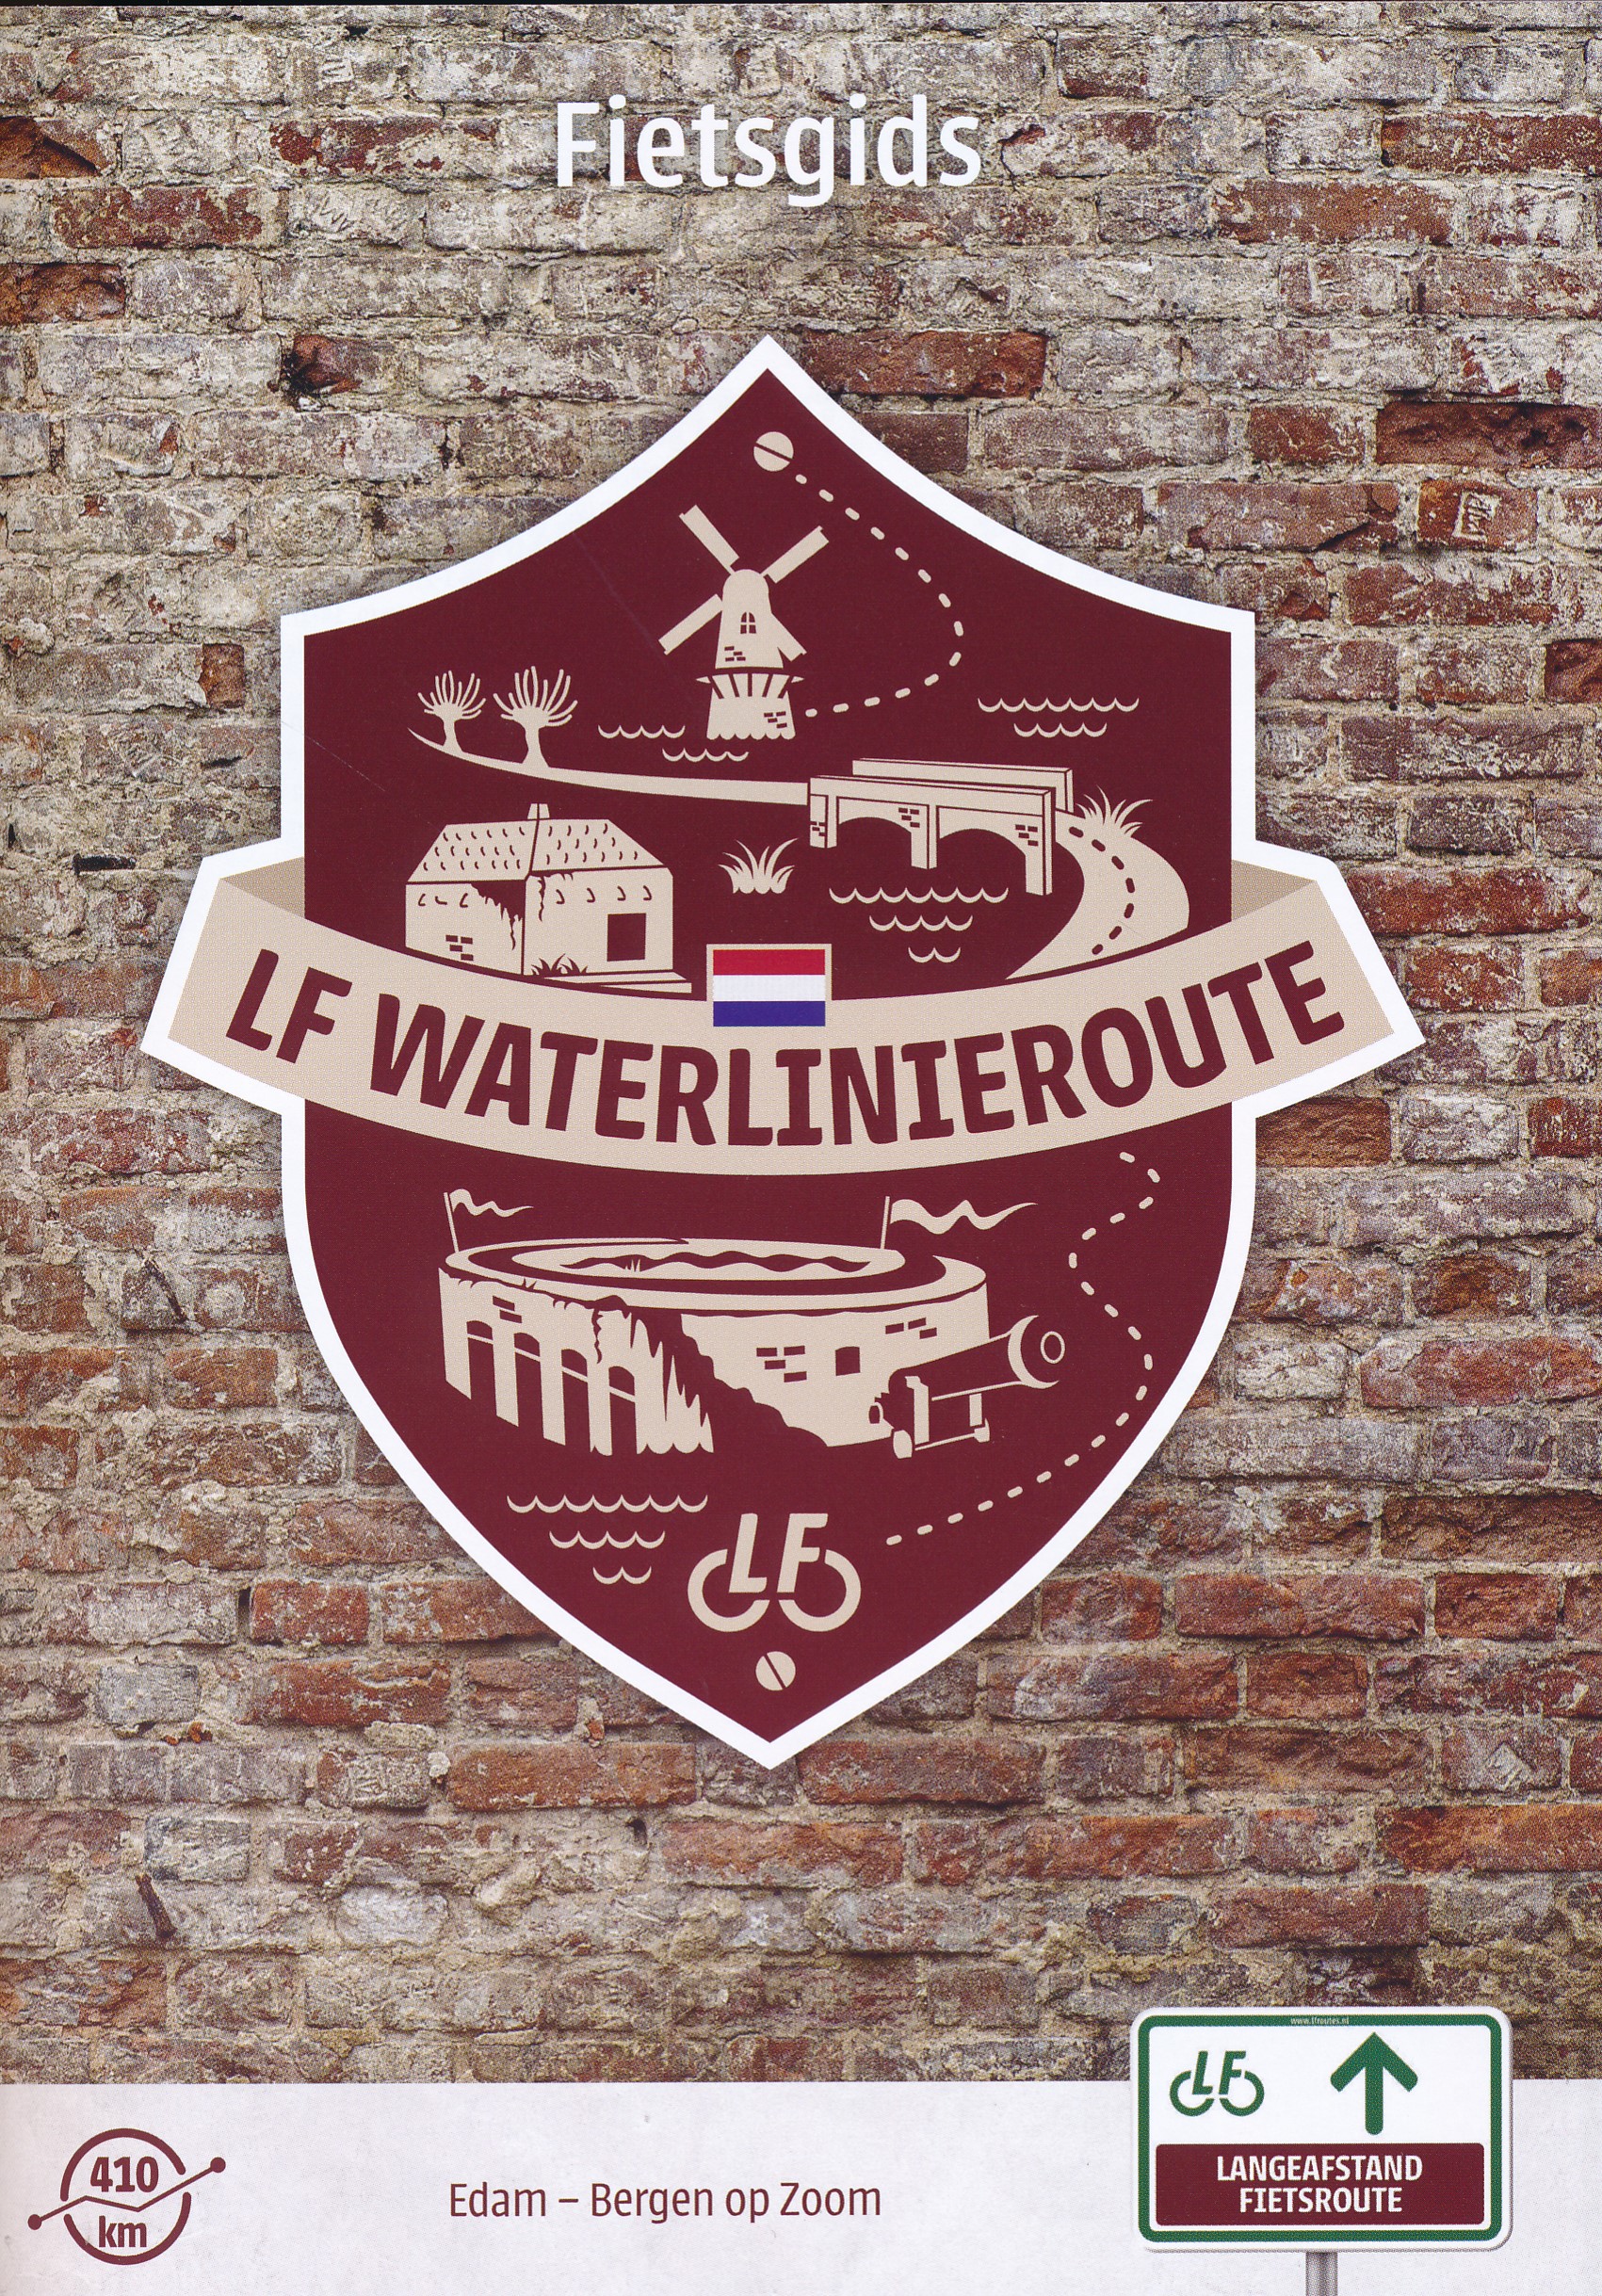 Online bestellen: Fietsgids LF Waterlinie route | Landelijk Fietsplatform